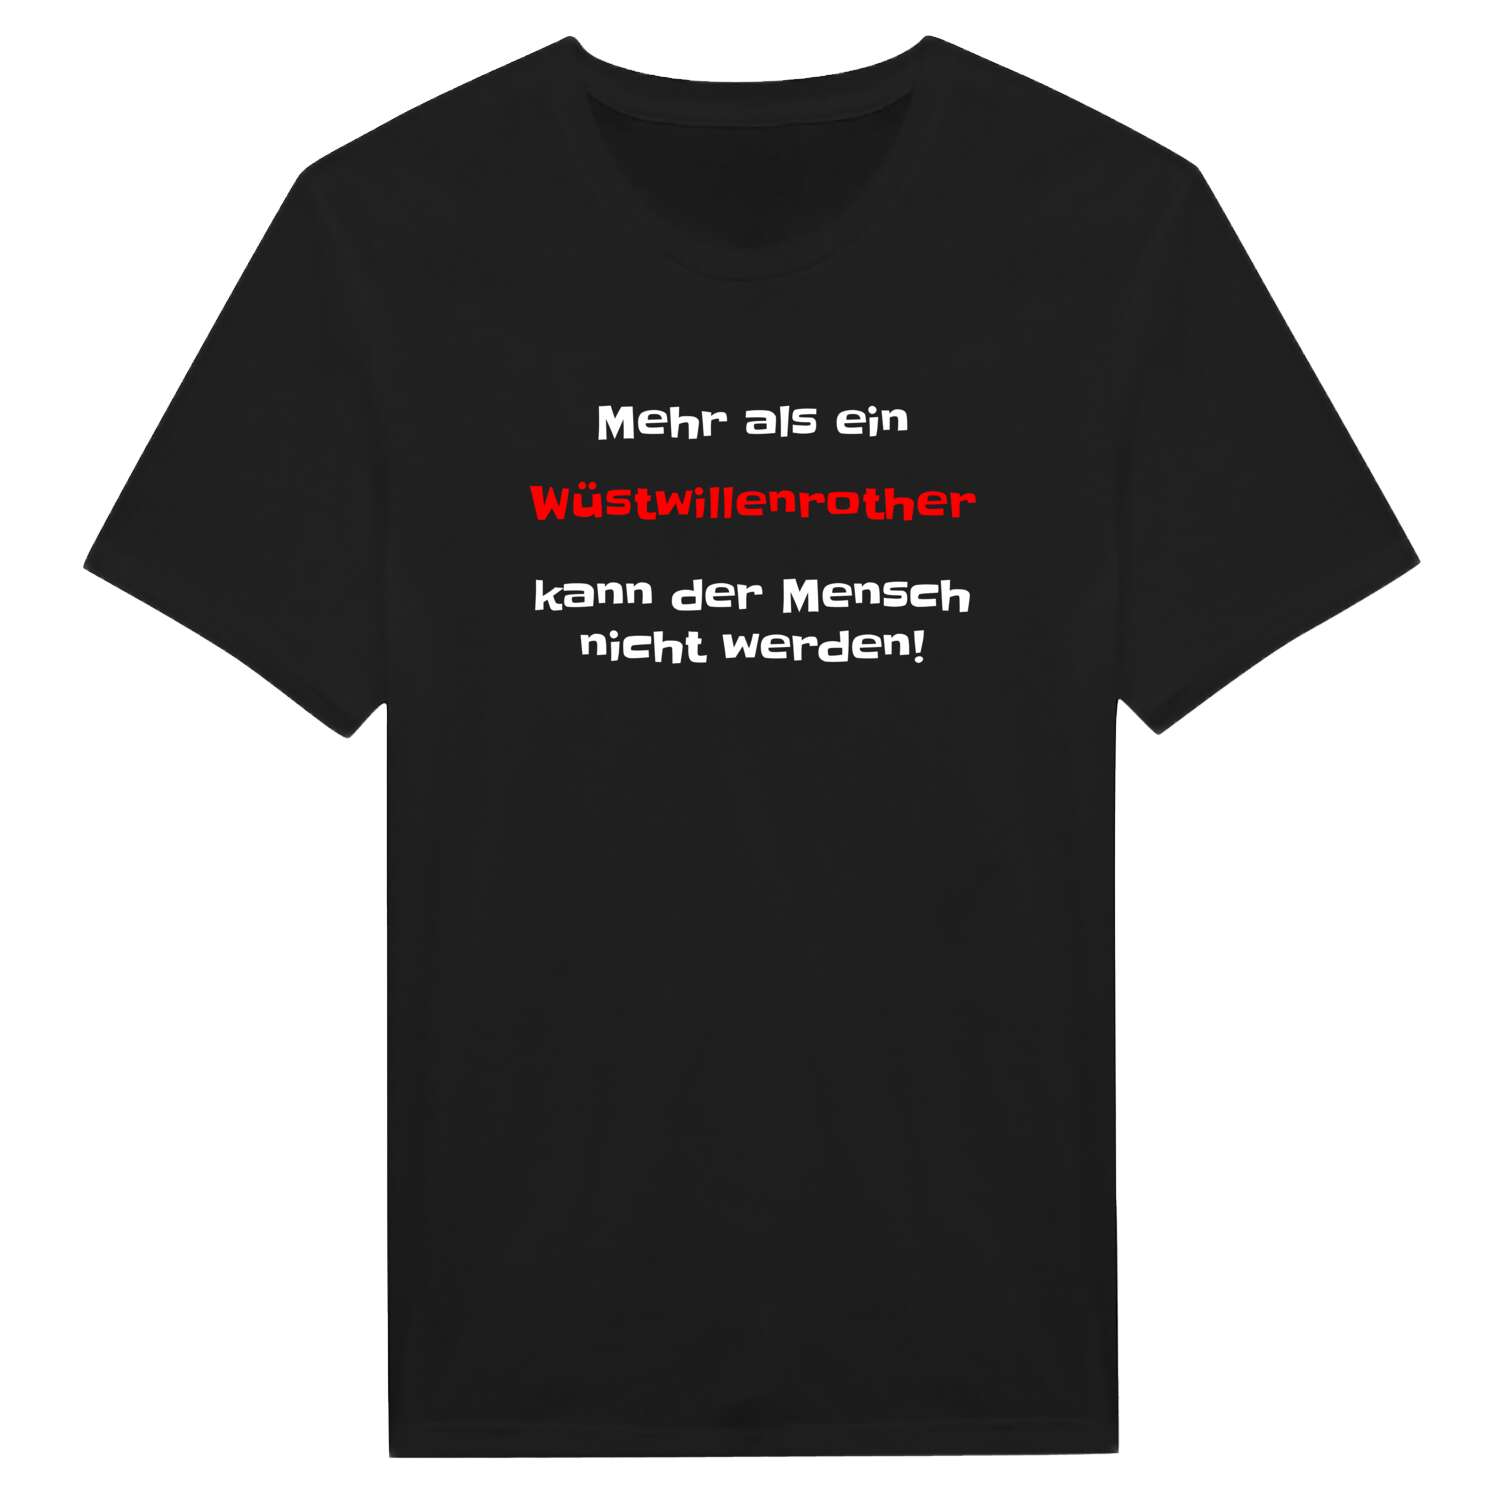 Wüstwillenroth T-Shirt »Mehr als ein«